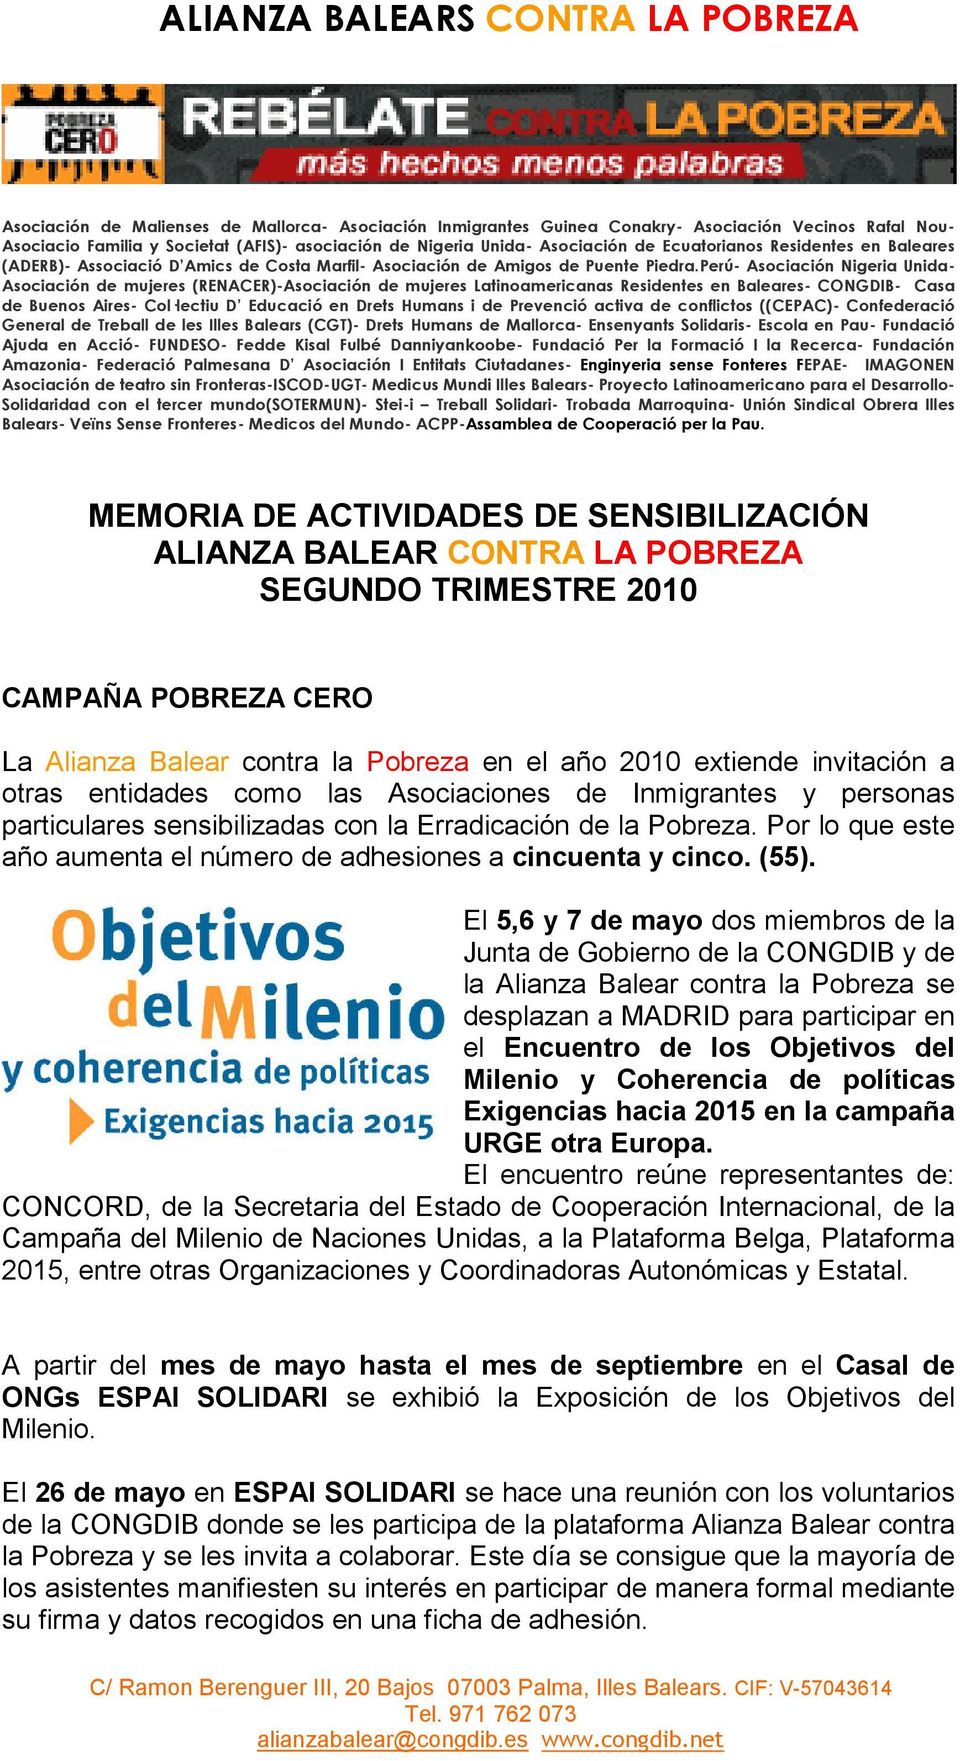 El 5,6 y 7 de mayo dos miembros de la Junta de Gobierno de la CONGDIB y de la Alianza Balear contra la Pobreza se desplazan a MADRID para participar en el Encuentro de los Objetivos del Milenio y